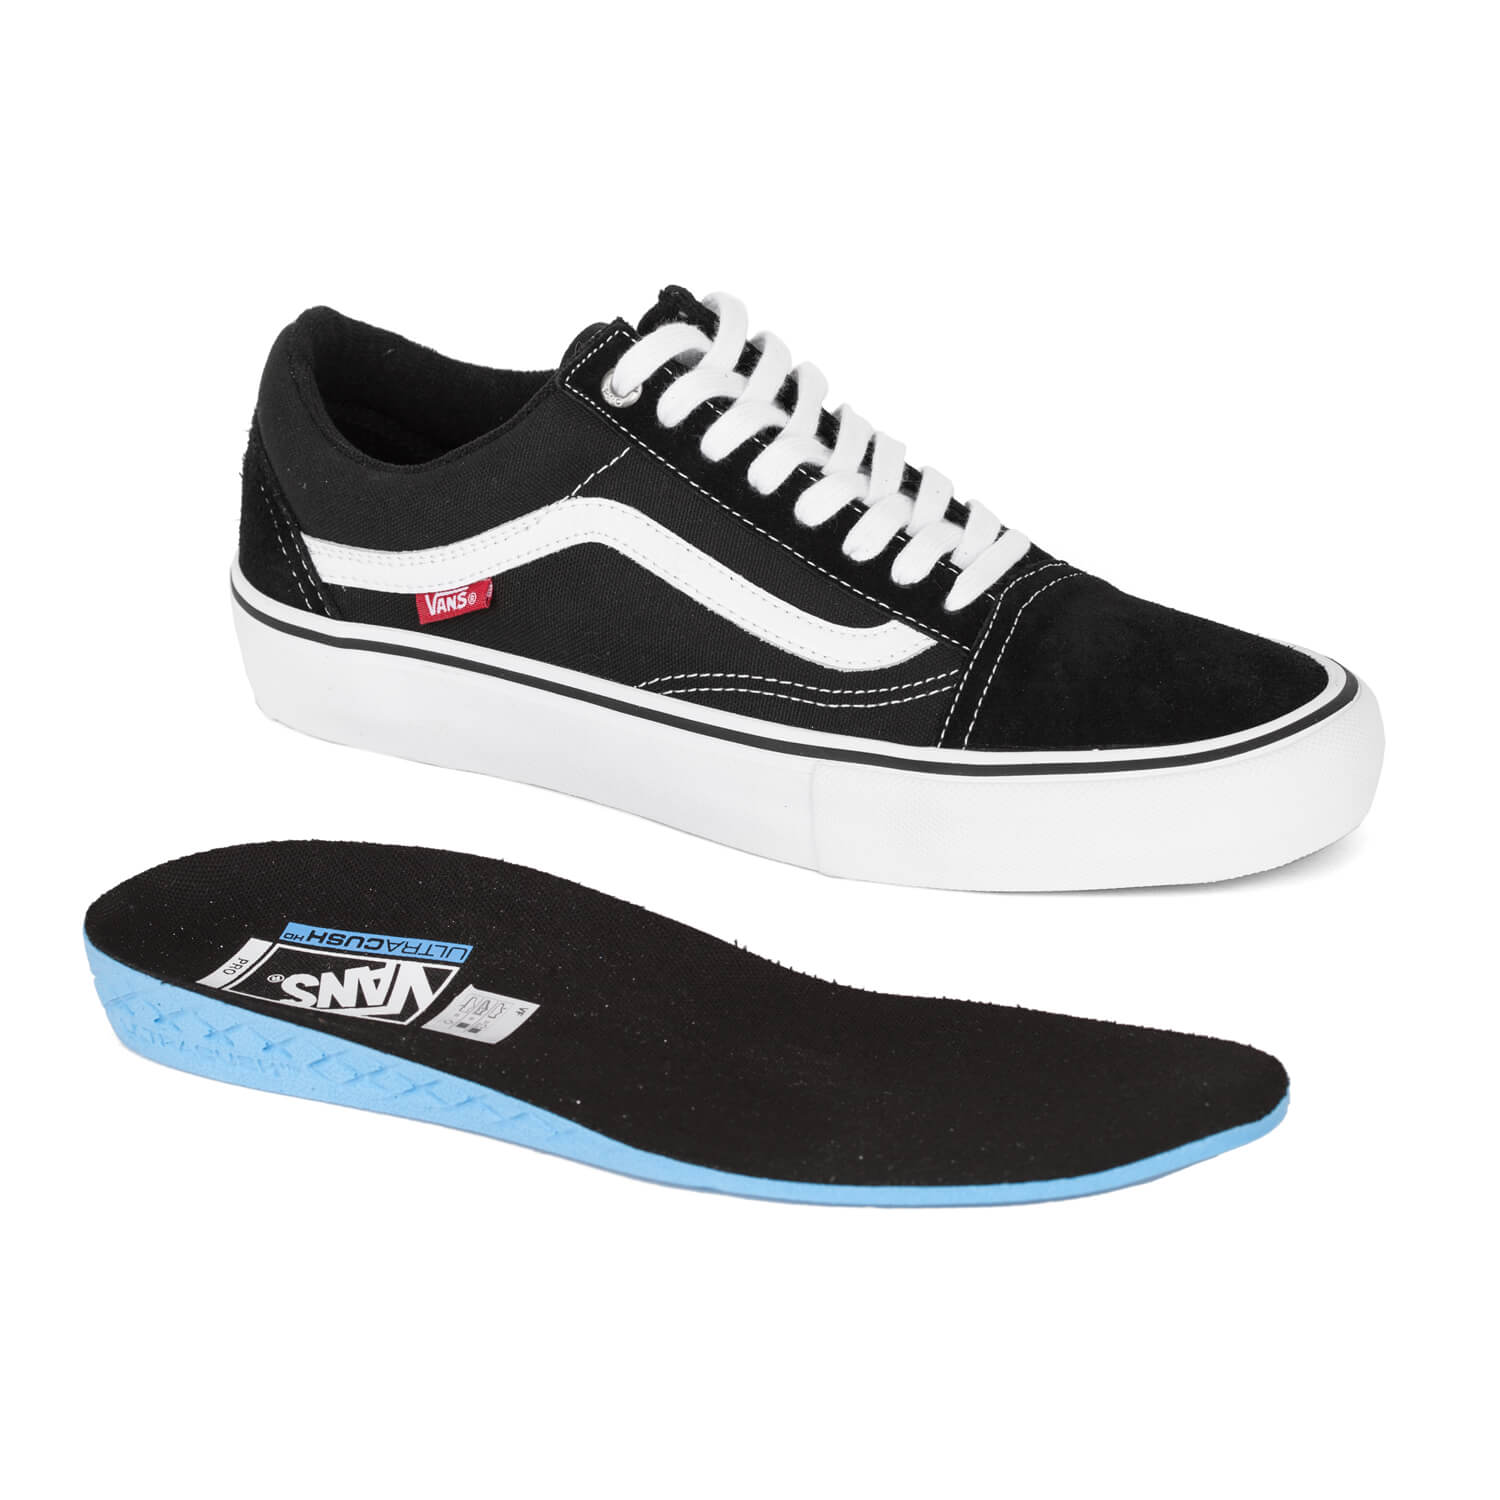 Vans Old Skool Pro Skate Schuhe Black White Optimierte Skate Version